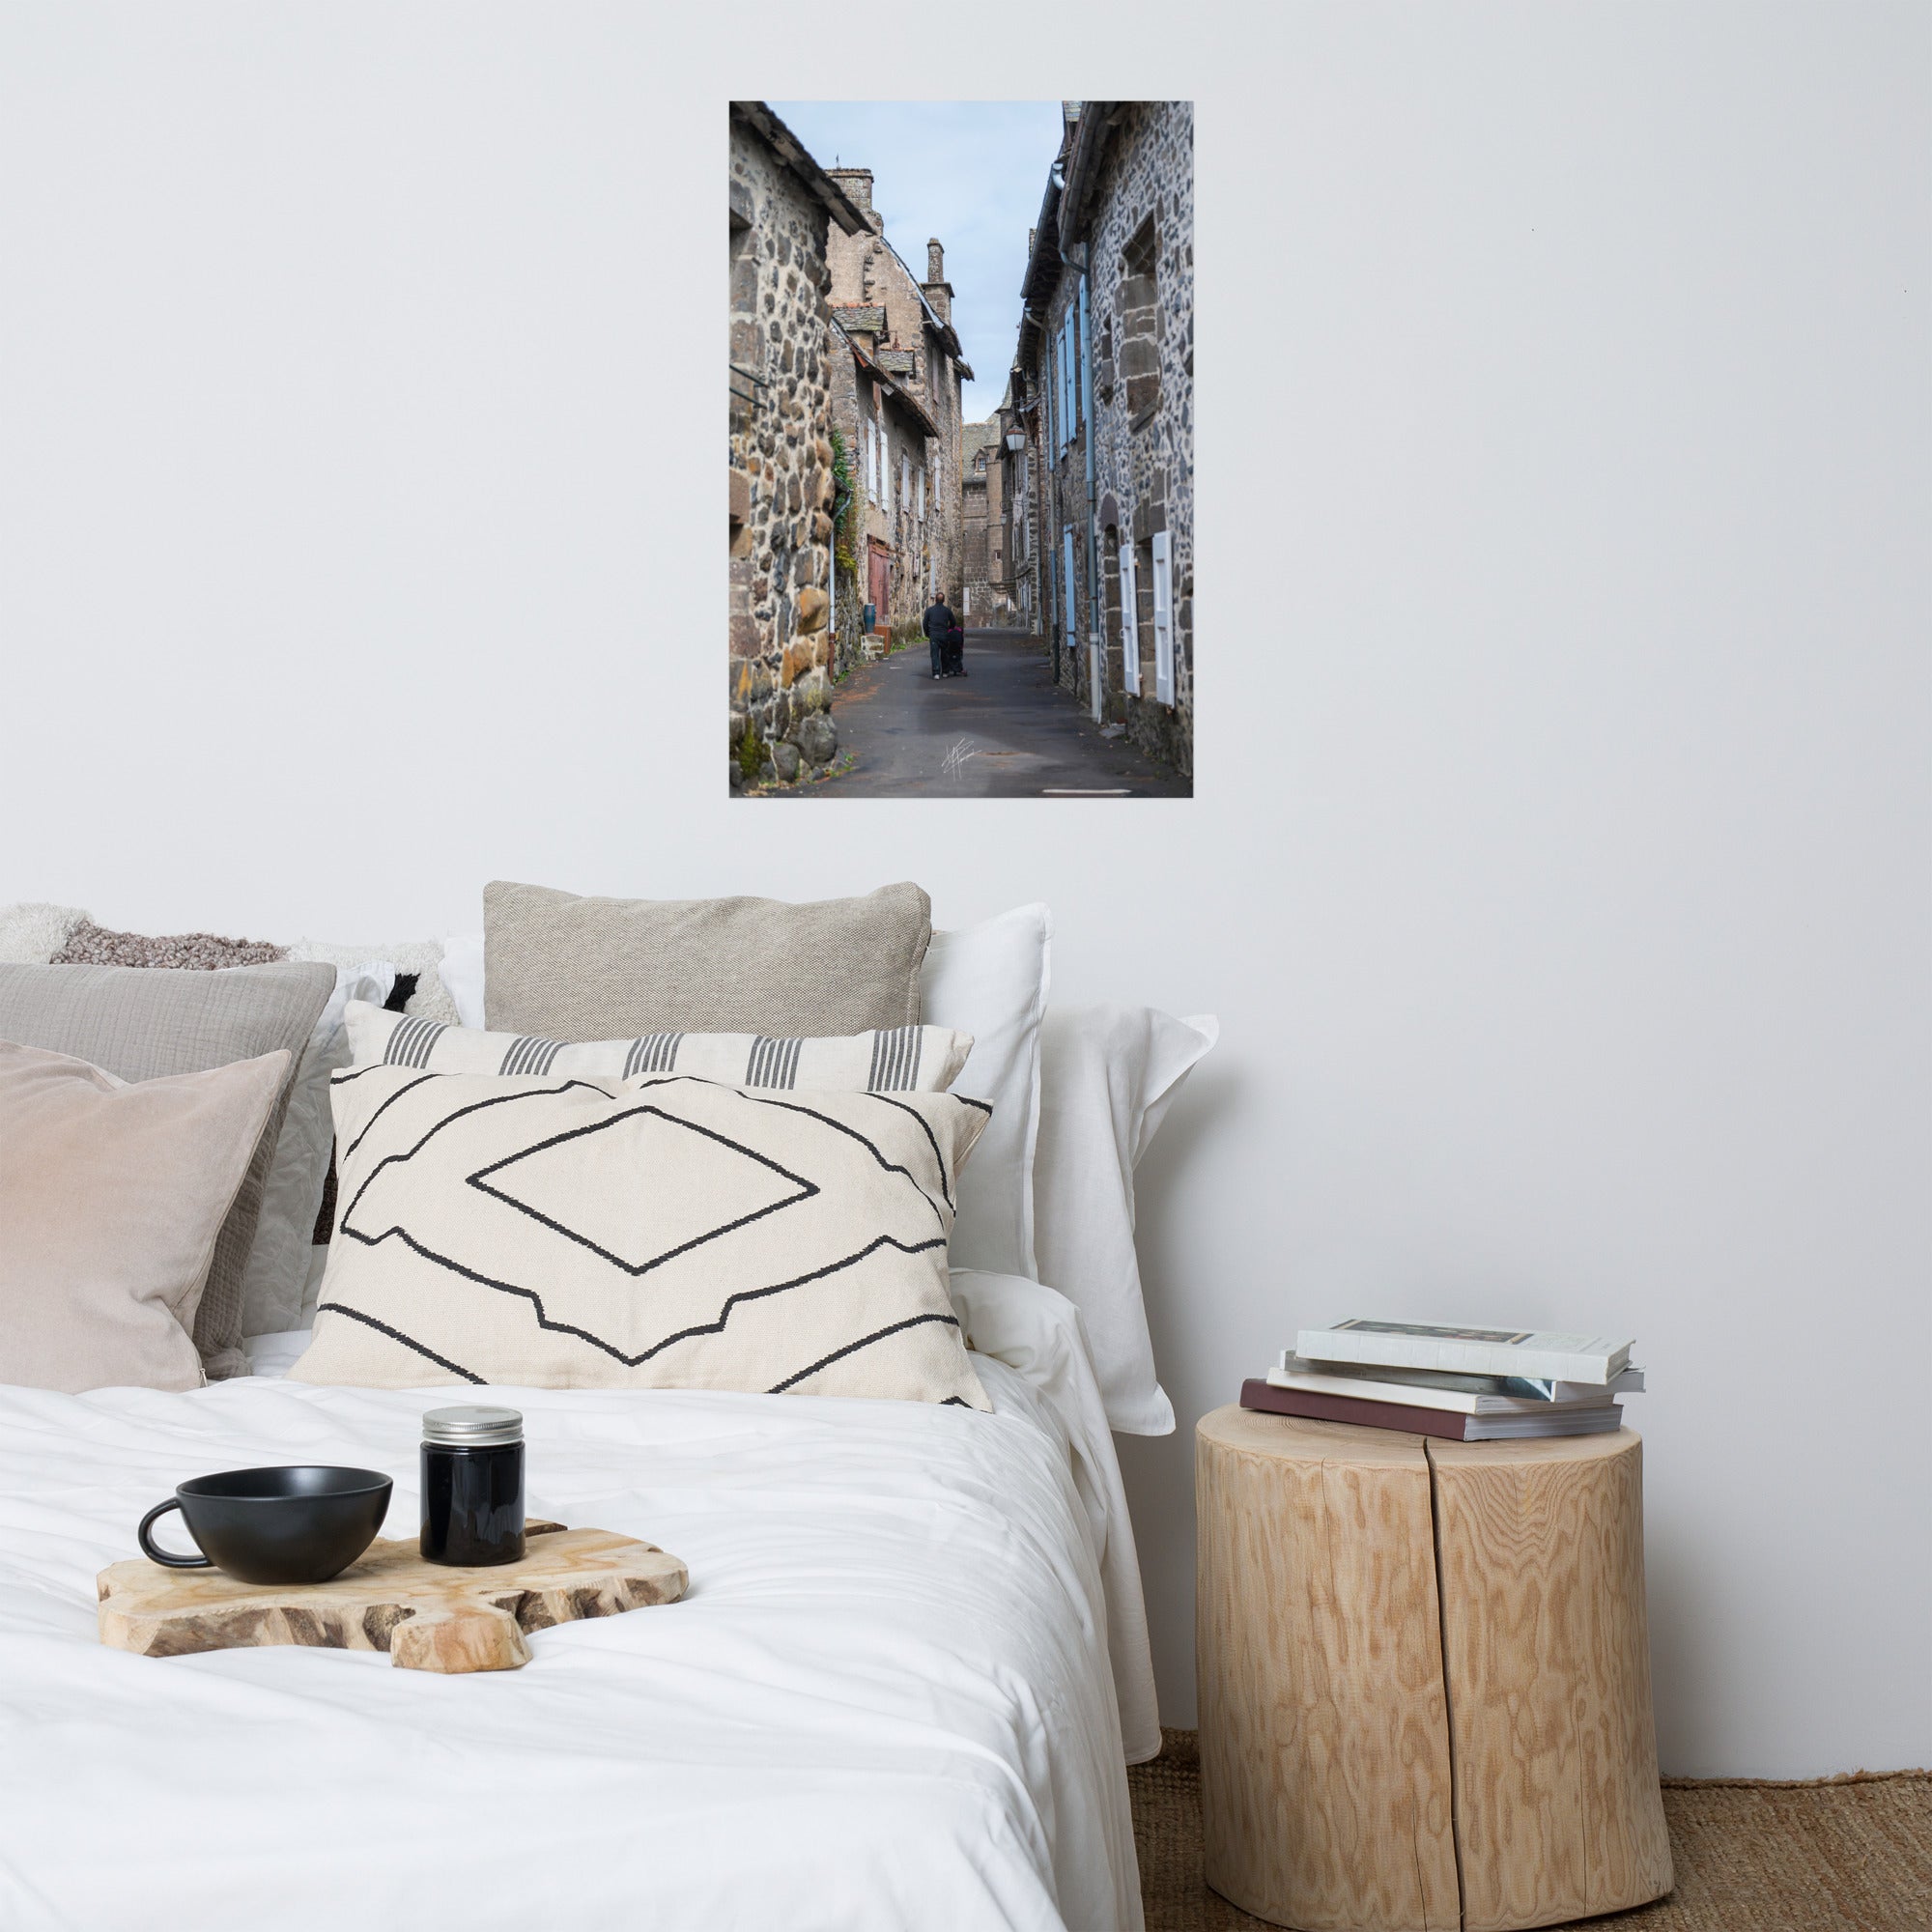 Photographie de la "Rue des Nobles" à Salers, illustrant le patrimoine médiéval de la ville.